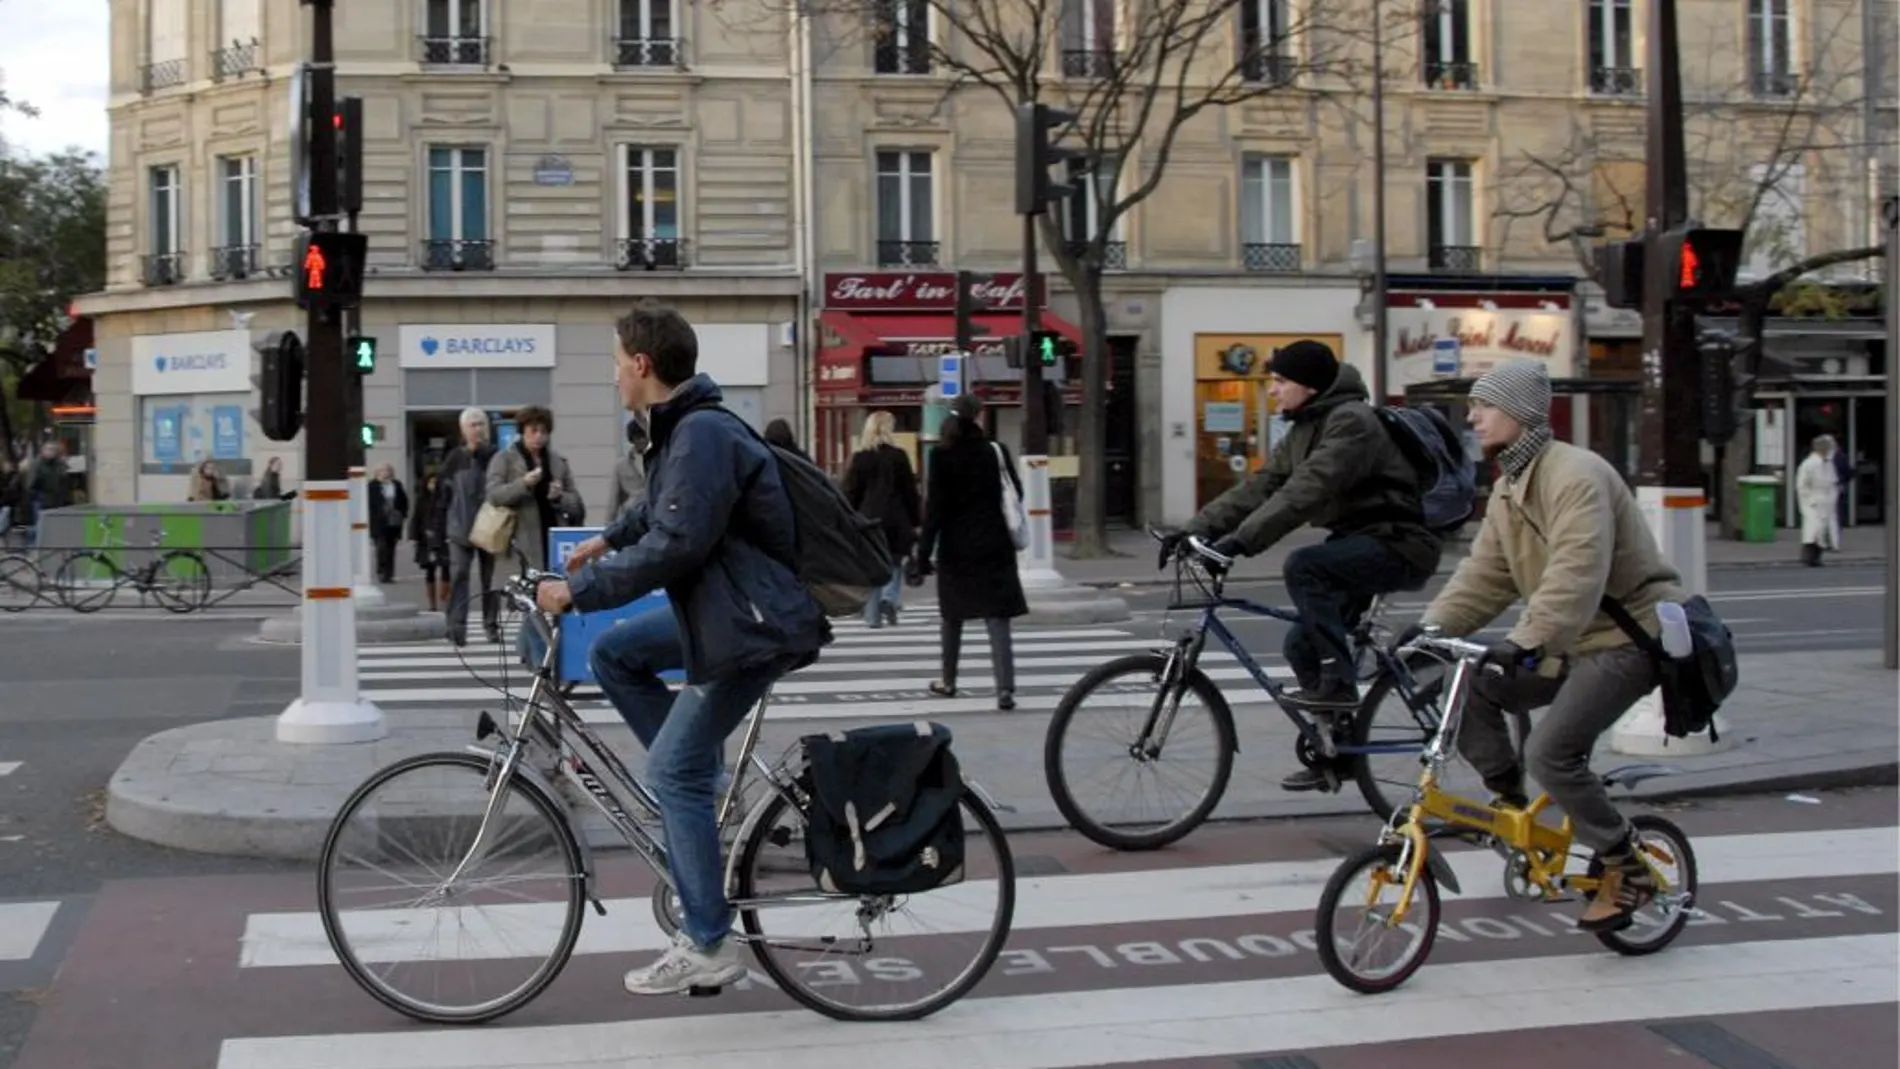 Las personas utilizan más la bicicleta cuando los desplazamientos son más cortos, y cuando tienen estaciones de bicicletas públicas cerca de sus domicilios y centros de trabajo o estudio. / ISGlobal